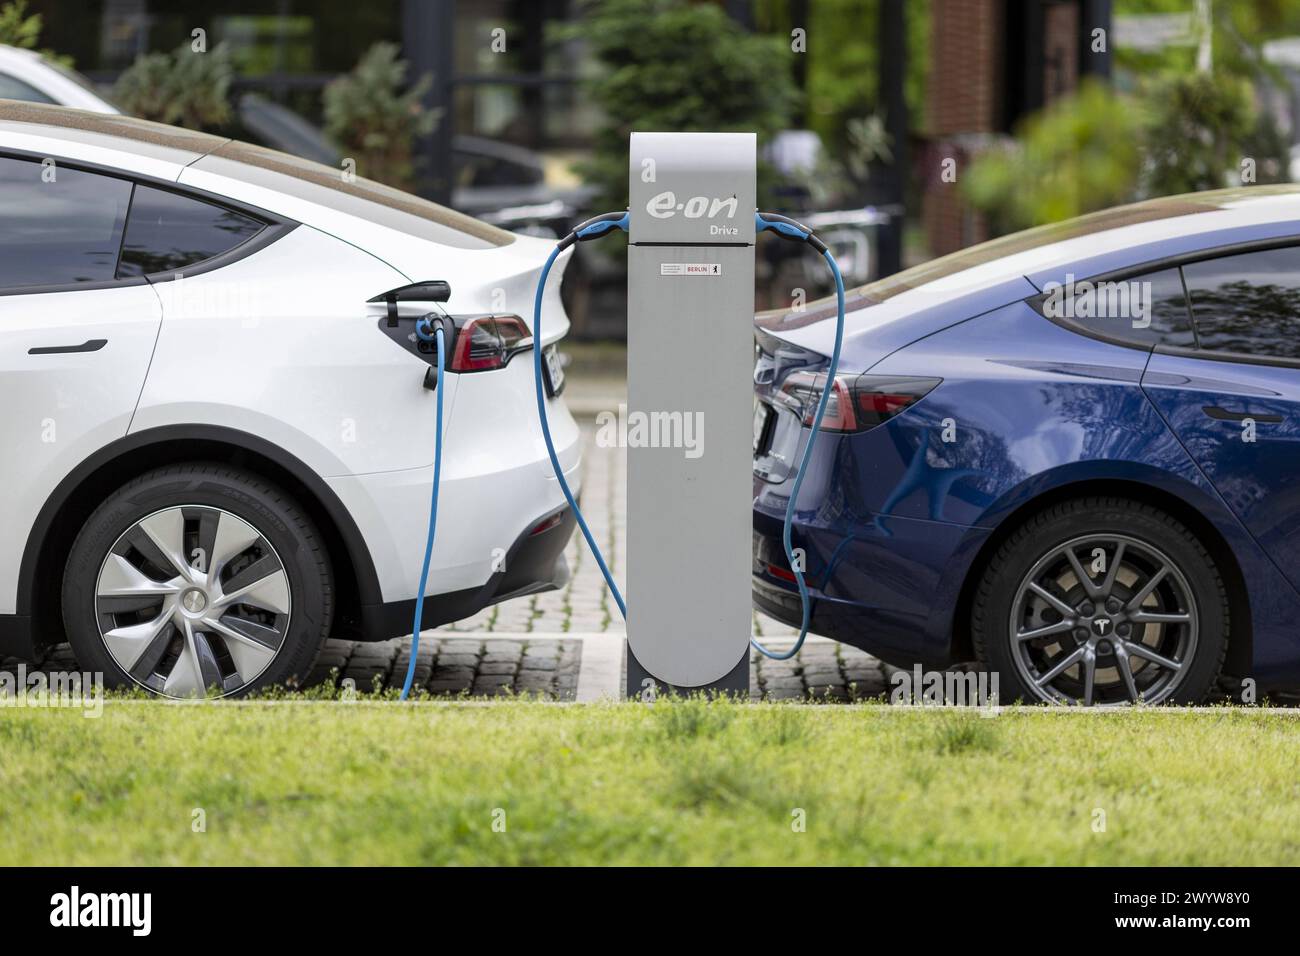 Eine Stromtankstelle E-Auto-Ladestation fuer elektrische Fahrzuge vom Energiekonzern E.ON an der gerade zwei PKW des Automobilherstellers Tesla laden, Stock Photo